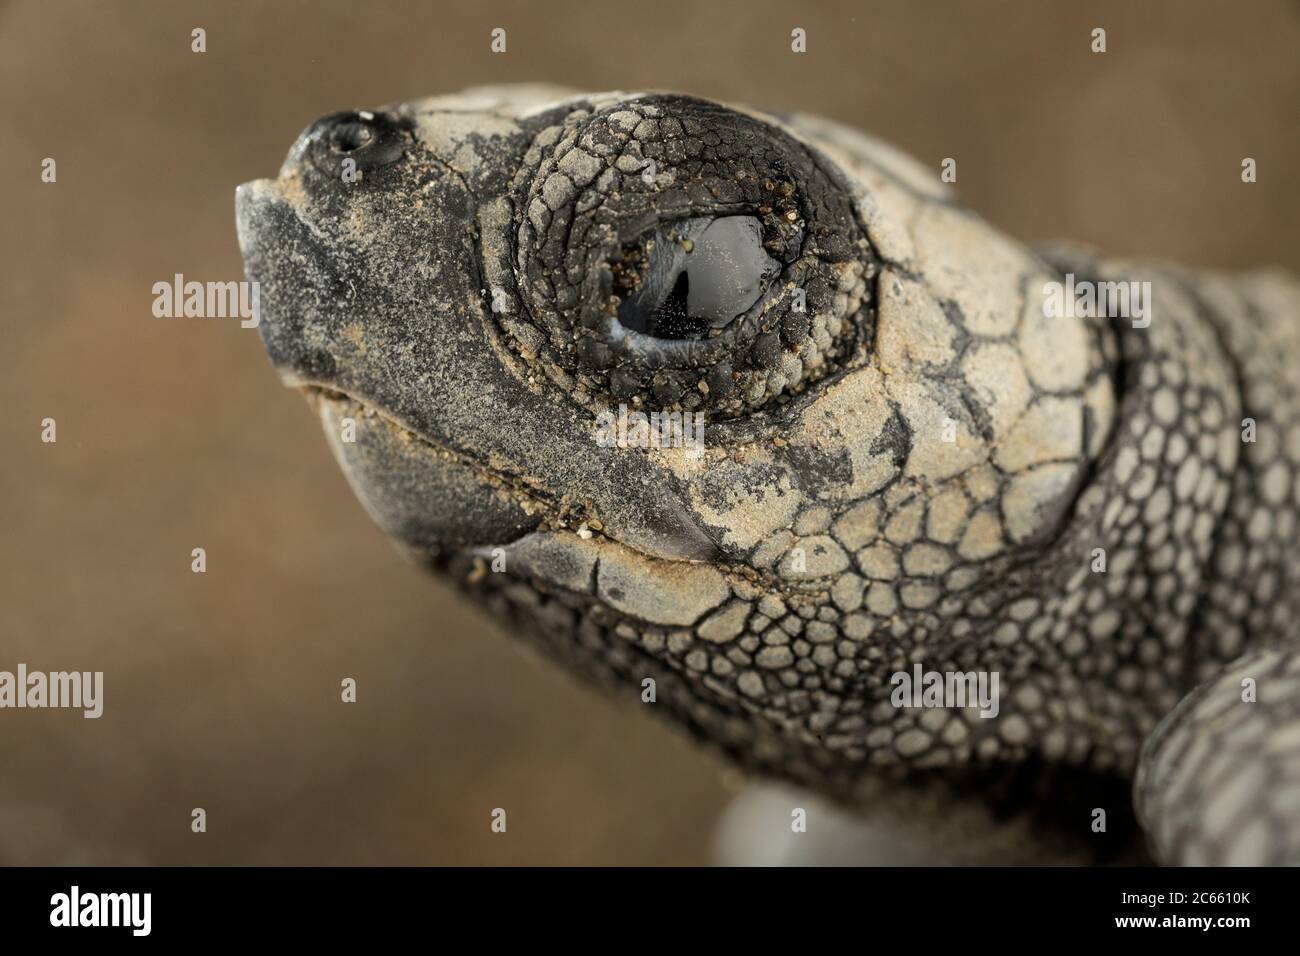 La dent d'oeuf aide la petite tortue de mer ridley olive (Lepidochelys olivacea) à ouvrir la coquille d'oeuf douce mais tenace. Banque D'Images